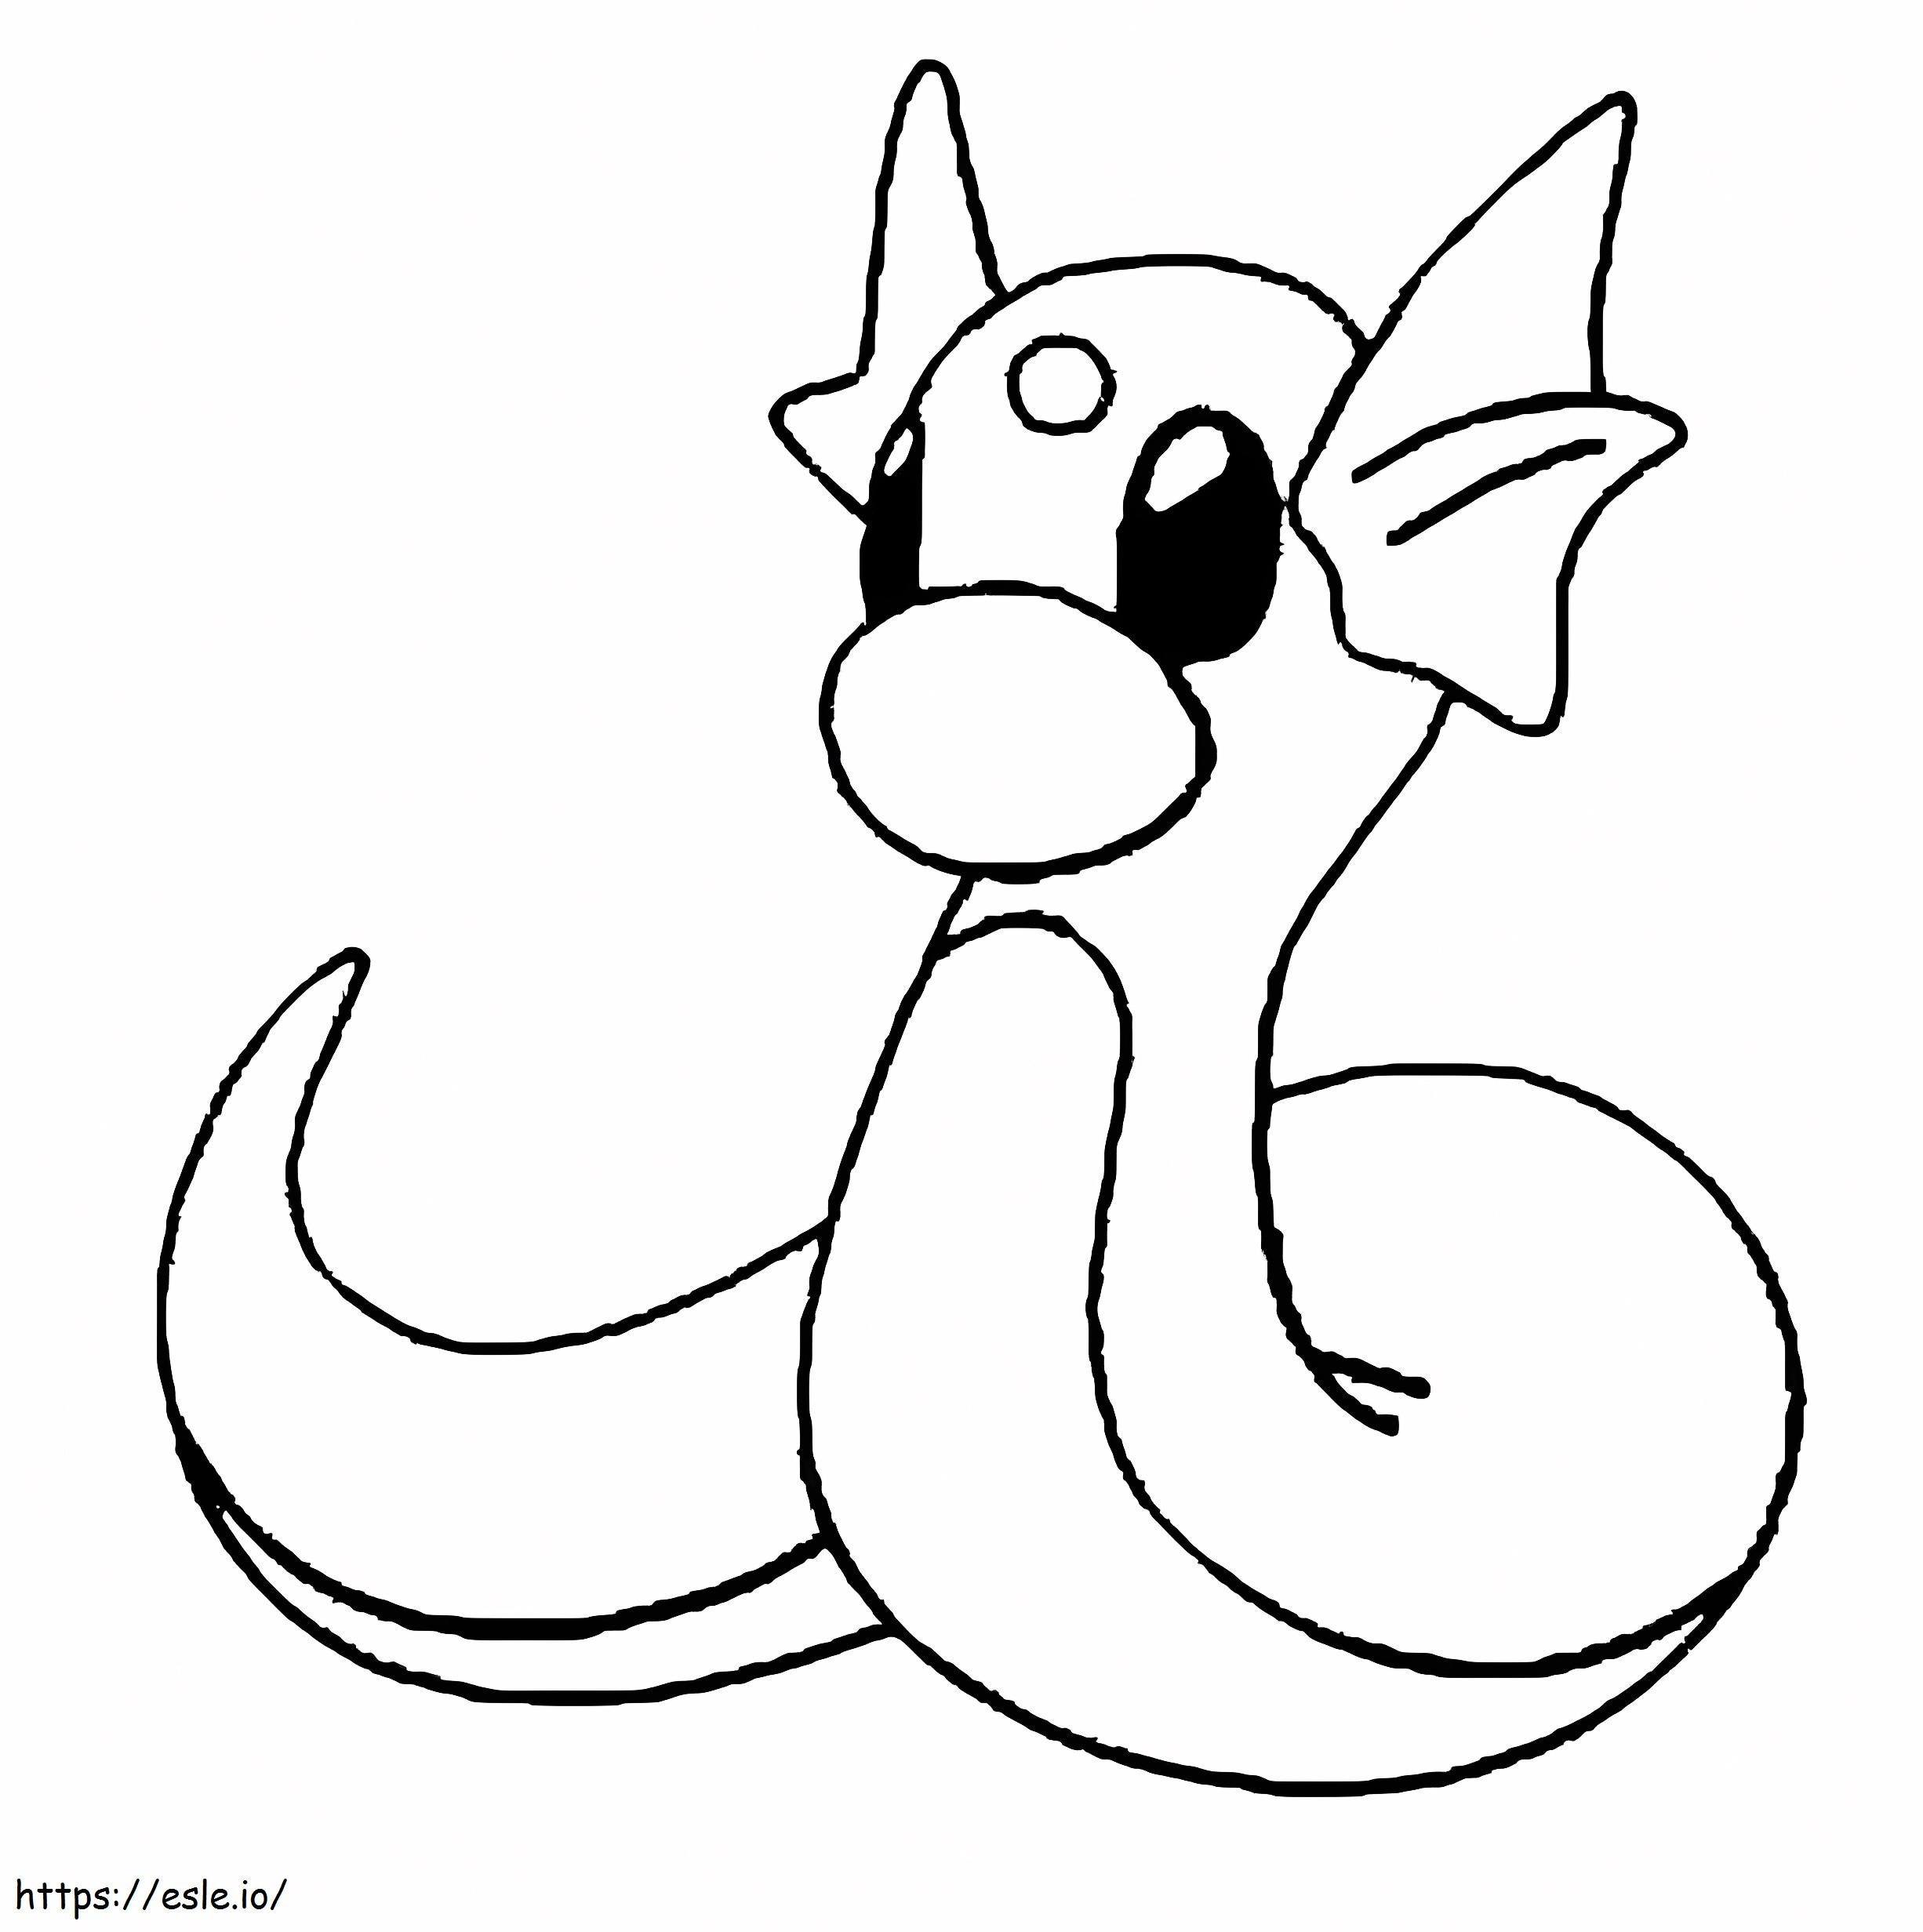 Dratini-Pokémon ausmalbilder